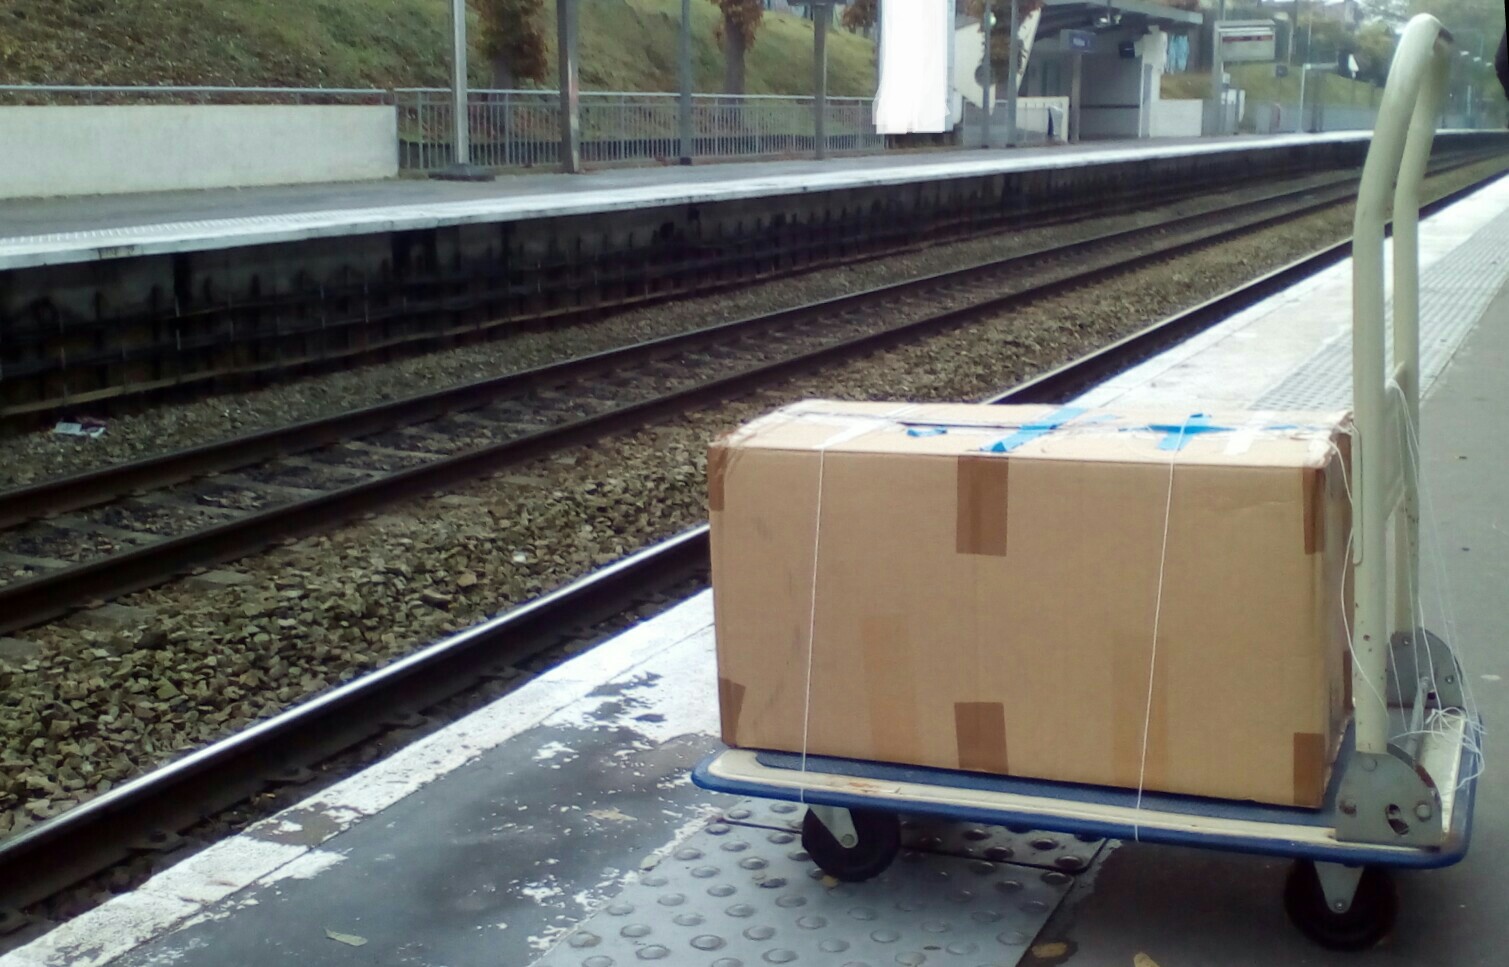 Boîte cartonnée posée sur un diable. L'ensemble se trouve sur un quai de gare RER, tout près des voies.